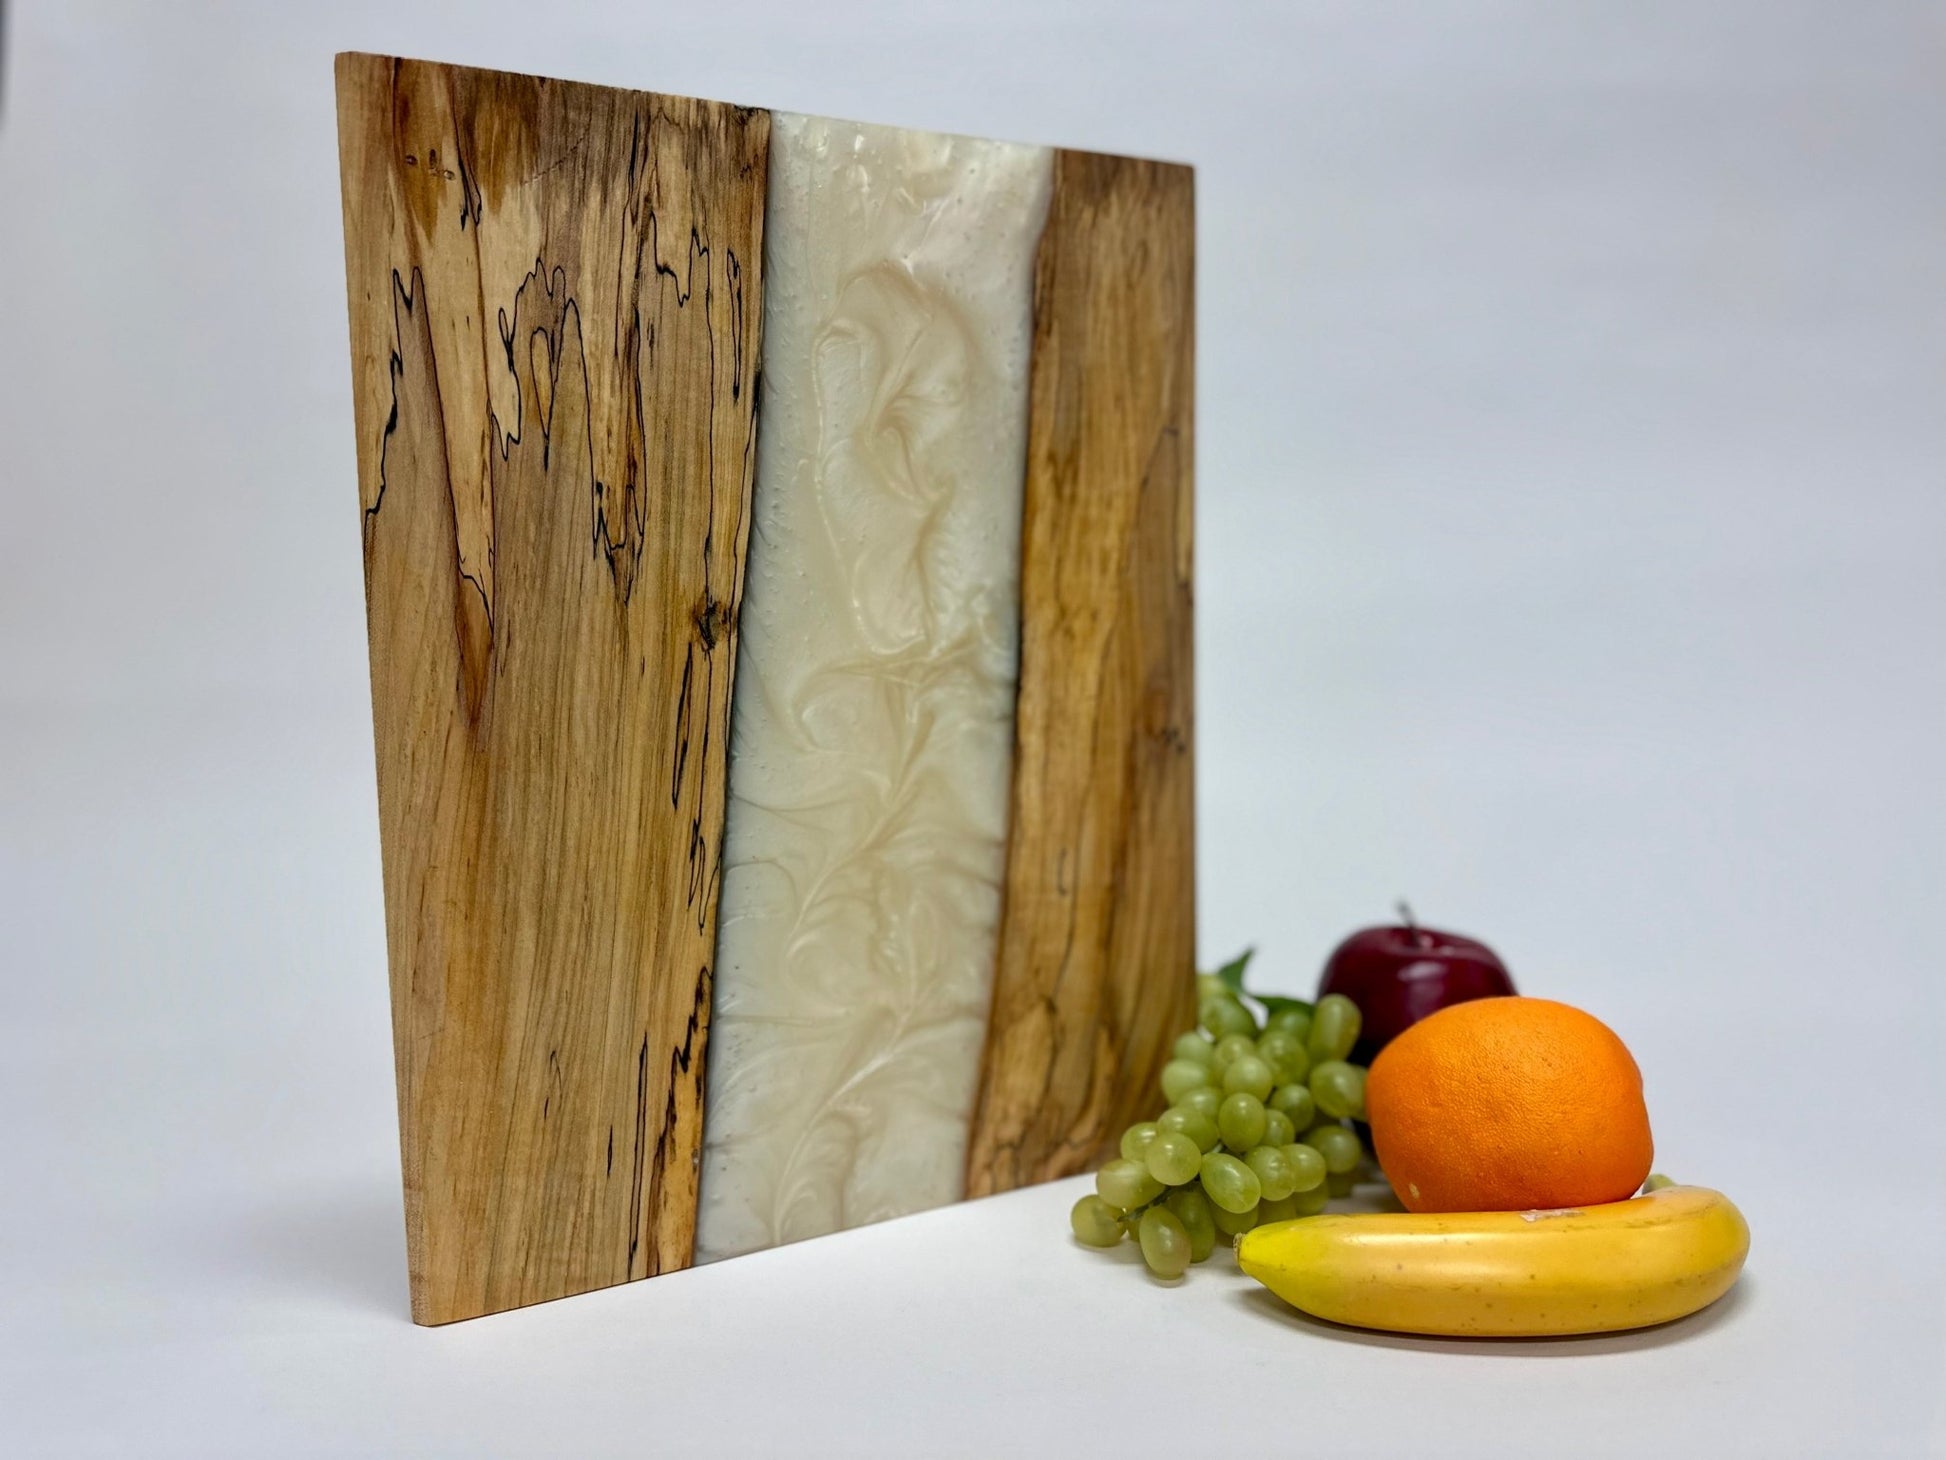 Maple ambrosia slab / Live-edge river epoxy charcuterie board - Rude Grainnovelty